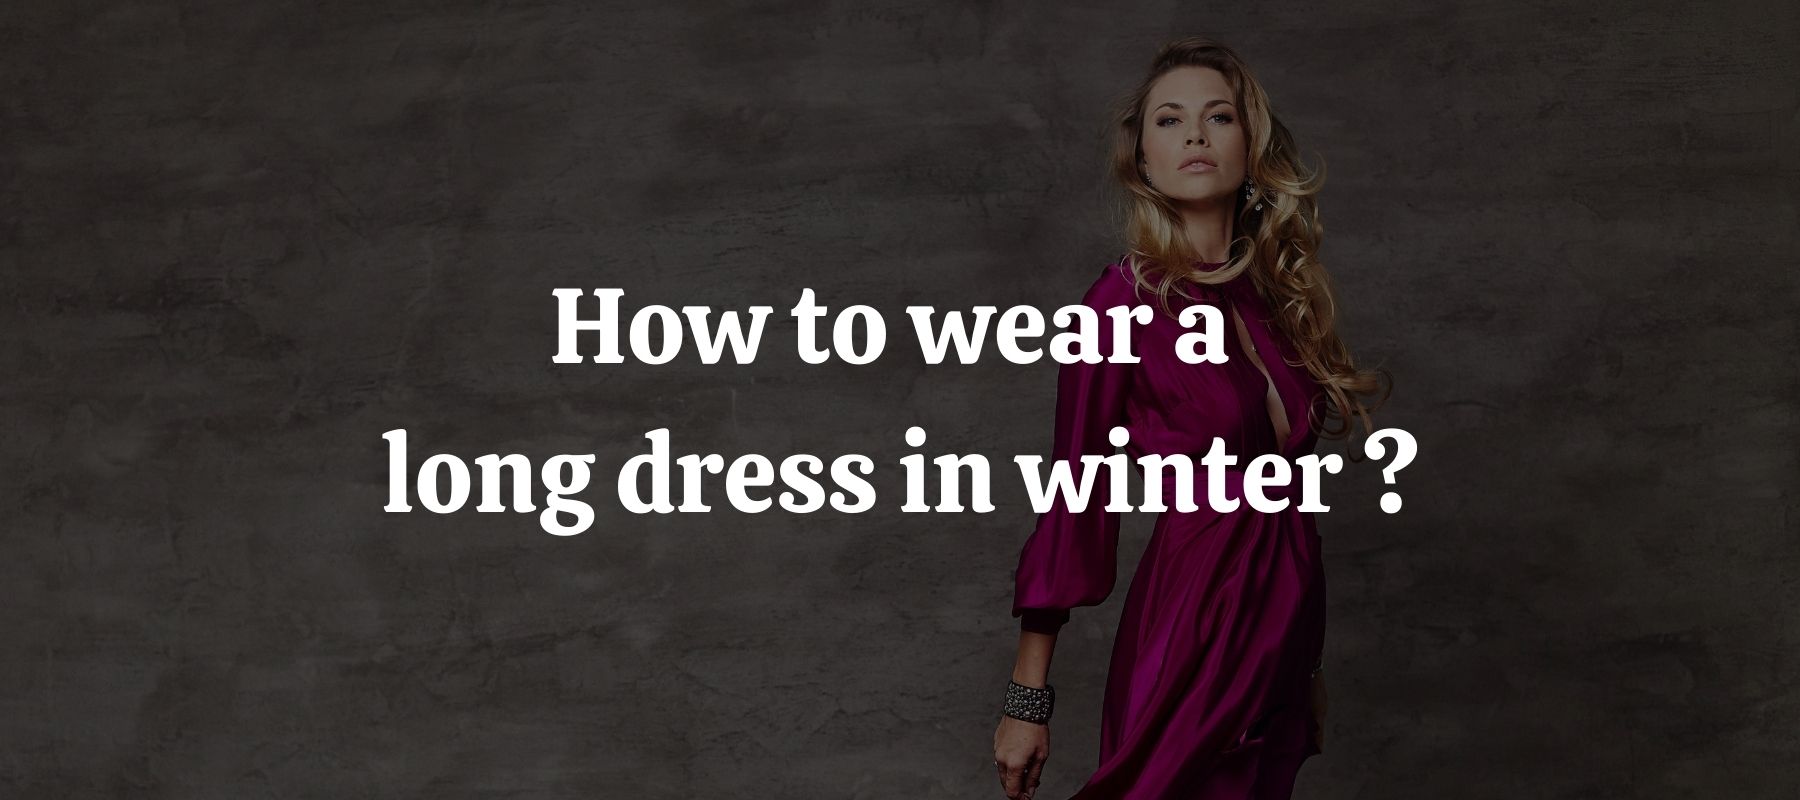 How to wear a long dress in winter